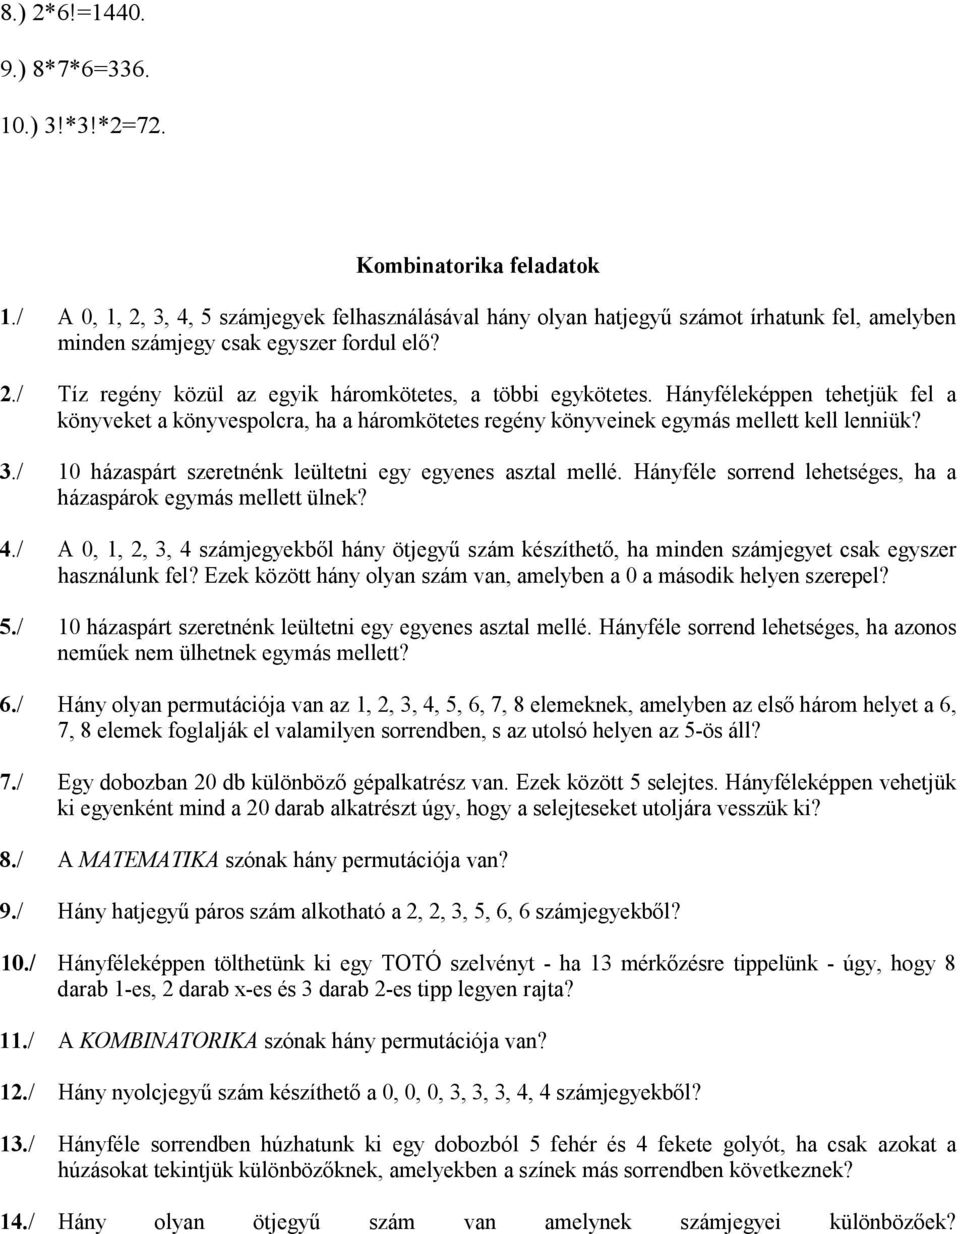 7. témakör: kombinatorika. Kidolgozott feladatok: - PDF Free Download